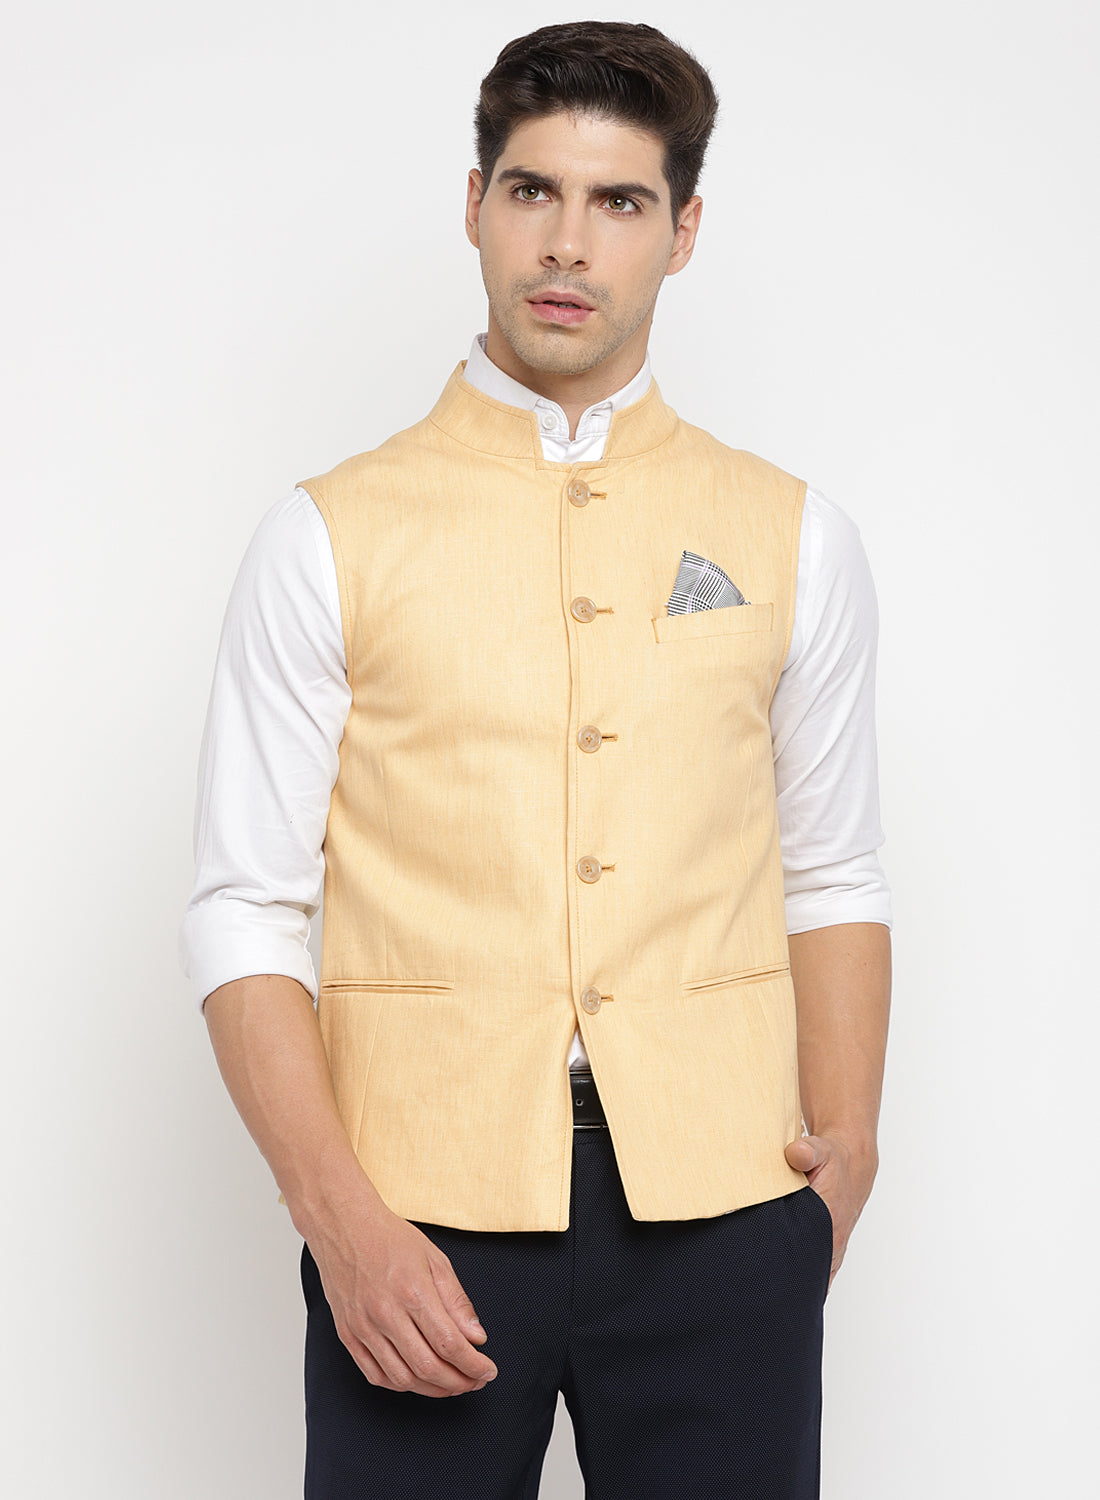 Silk linen nehru jacket by Josh Goraya | The Secret Label